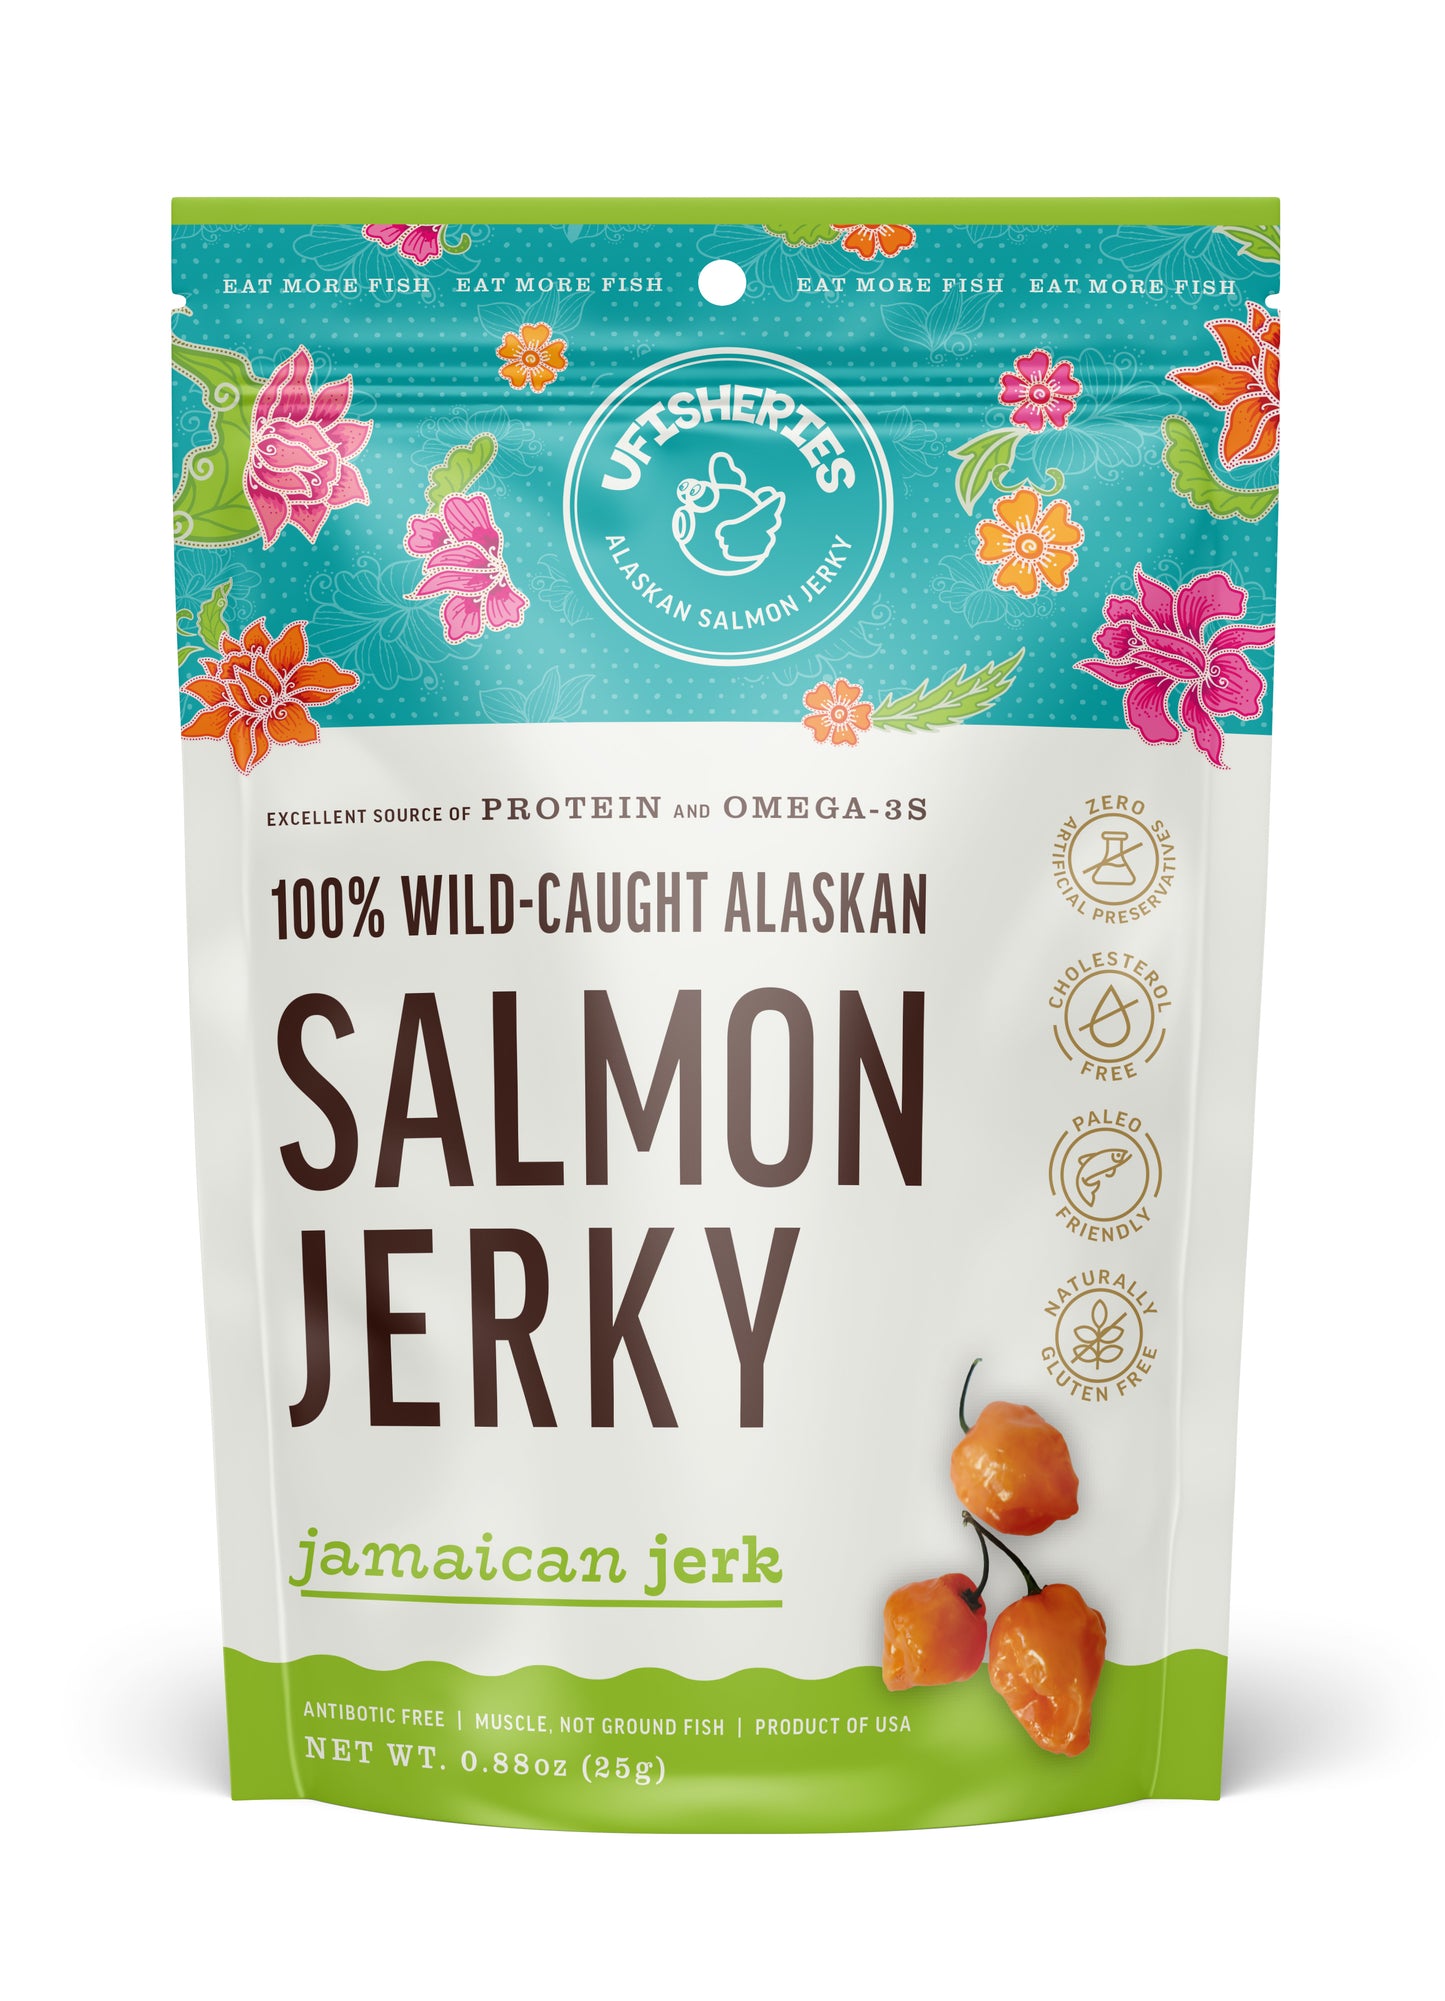 Jamaican Jerk Salmon Jerky